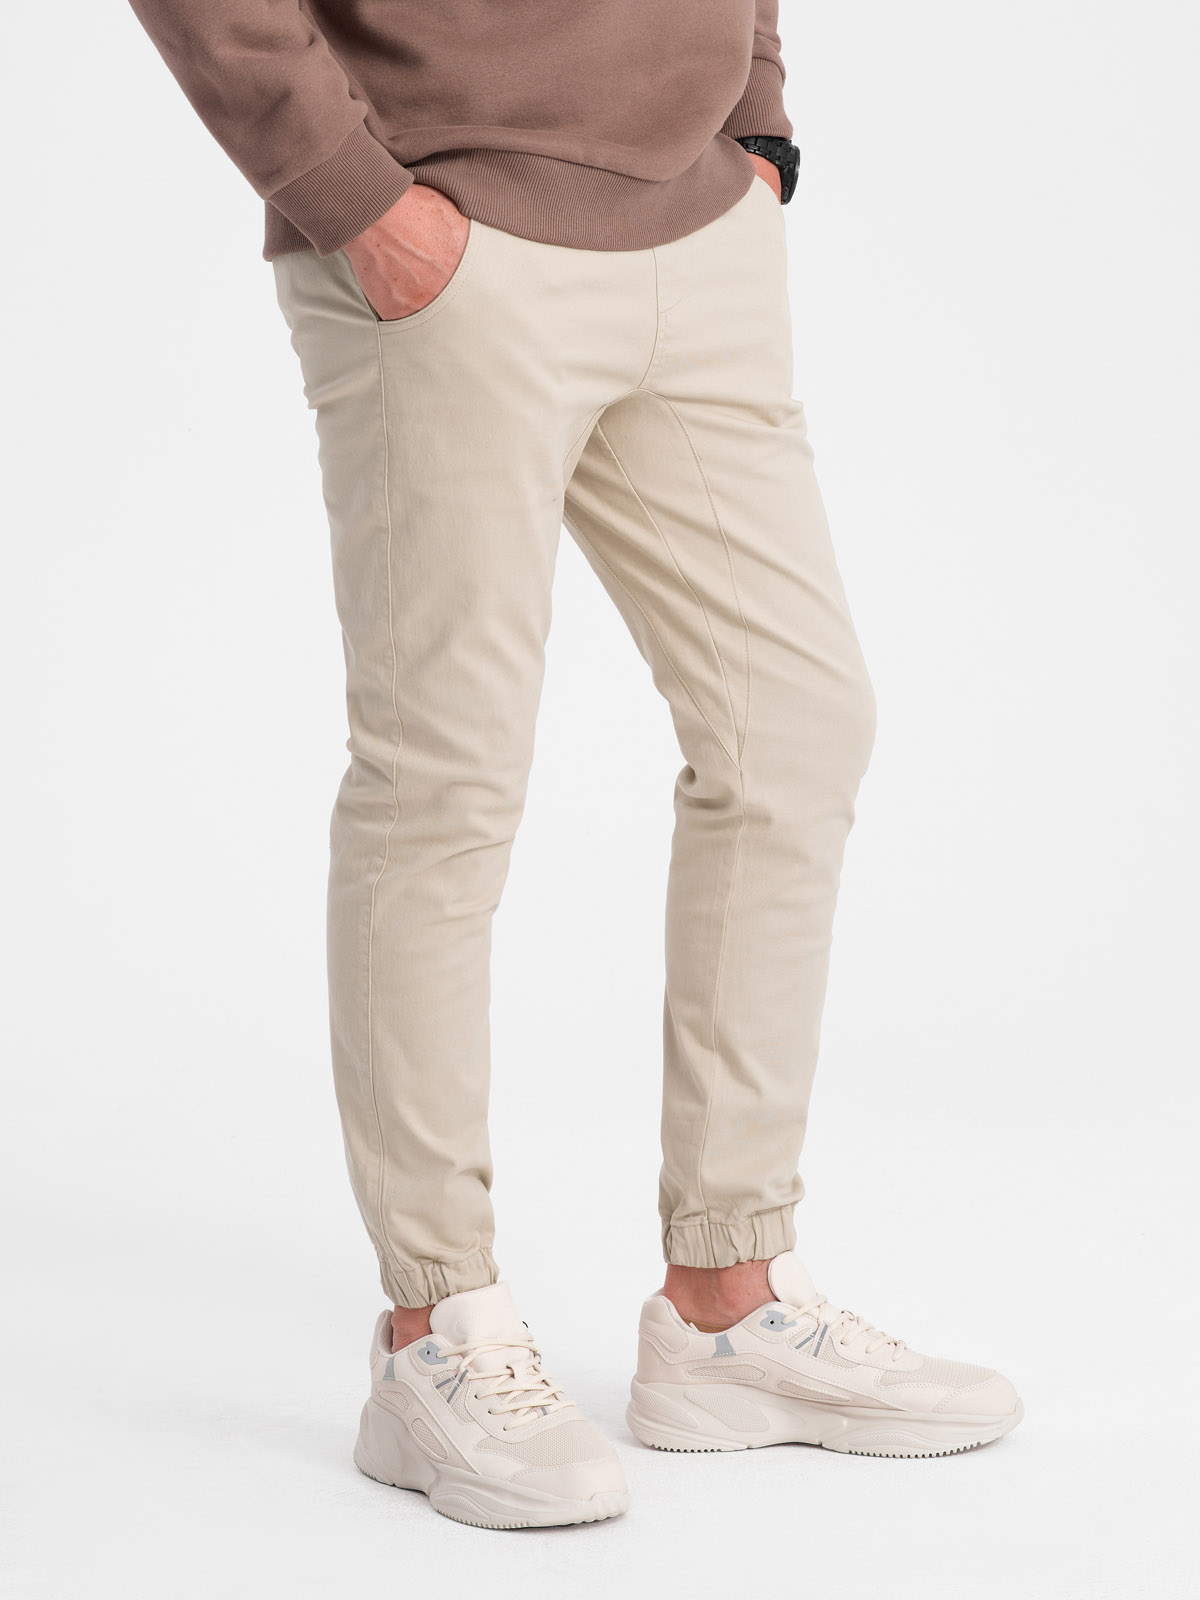 Men's pants joggers P885 - beige | MODONE wholesale - Clothing For Men